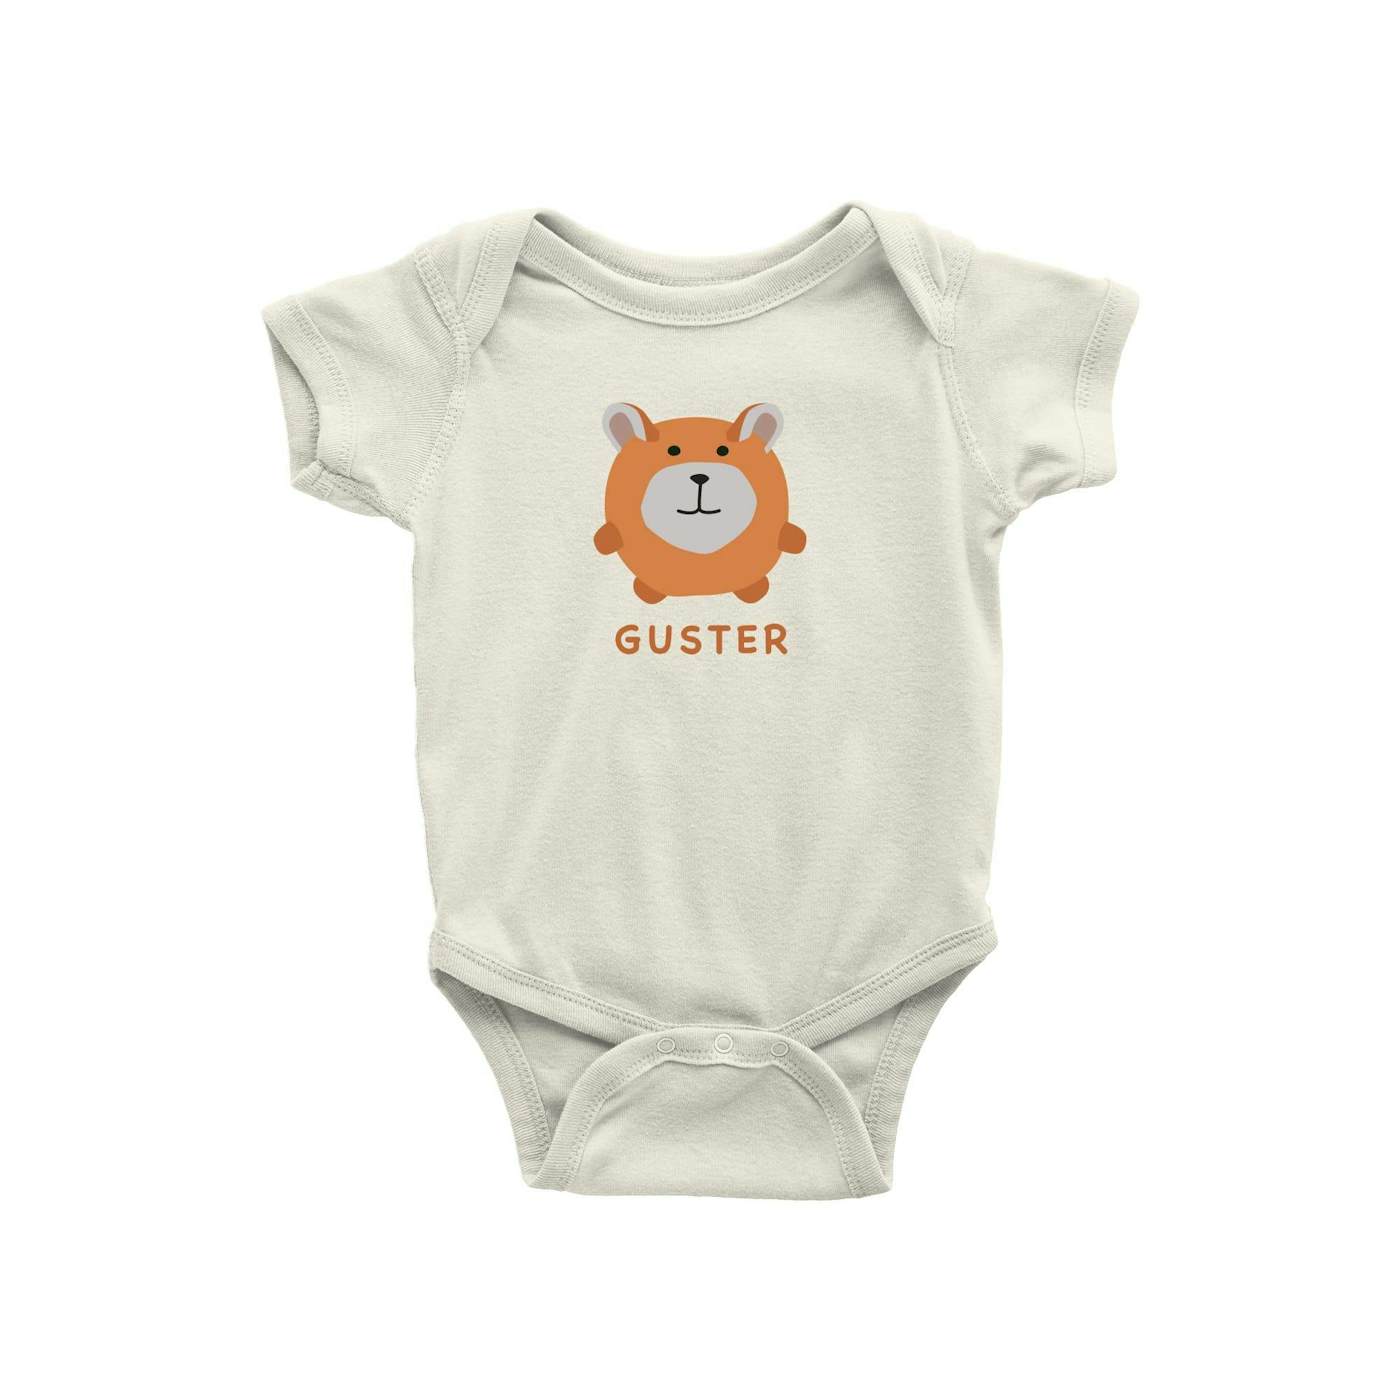 Guster 'Little Friend' Baby Onesie